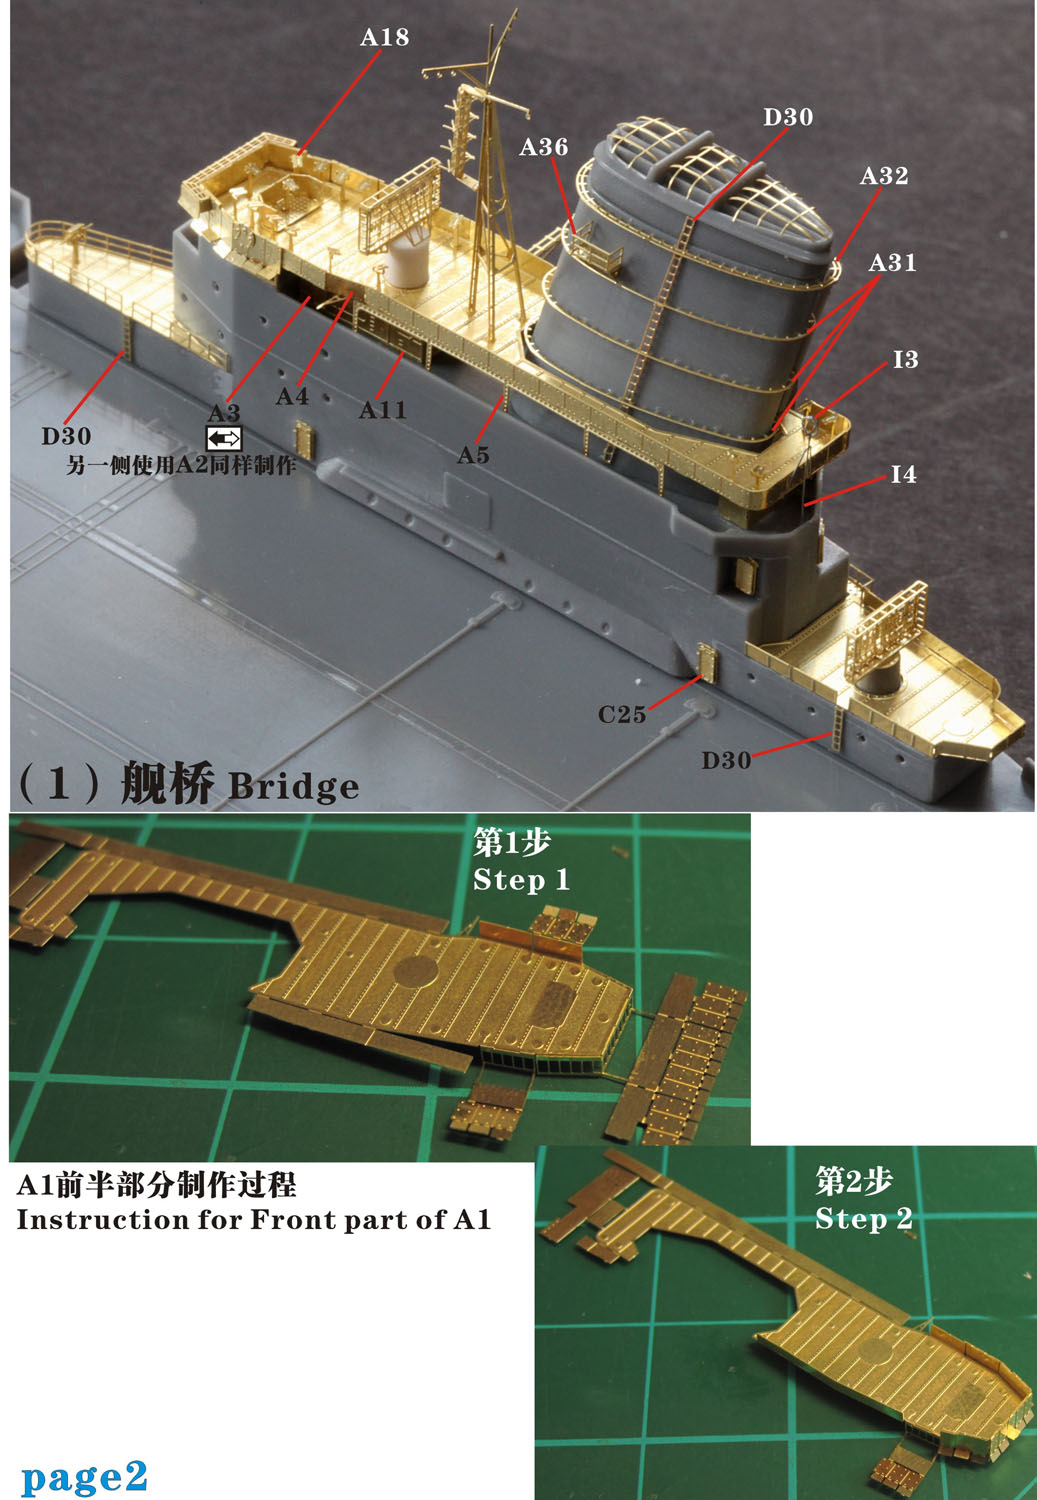 1/700 二战日本海军信浓号航空母舰舰桥与平台升级改造套件(配田宫31215) - 点击图像关闭